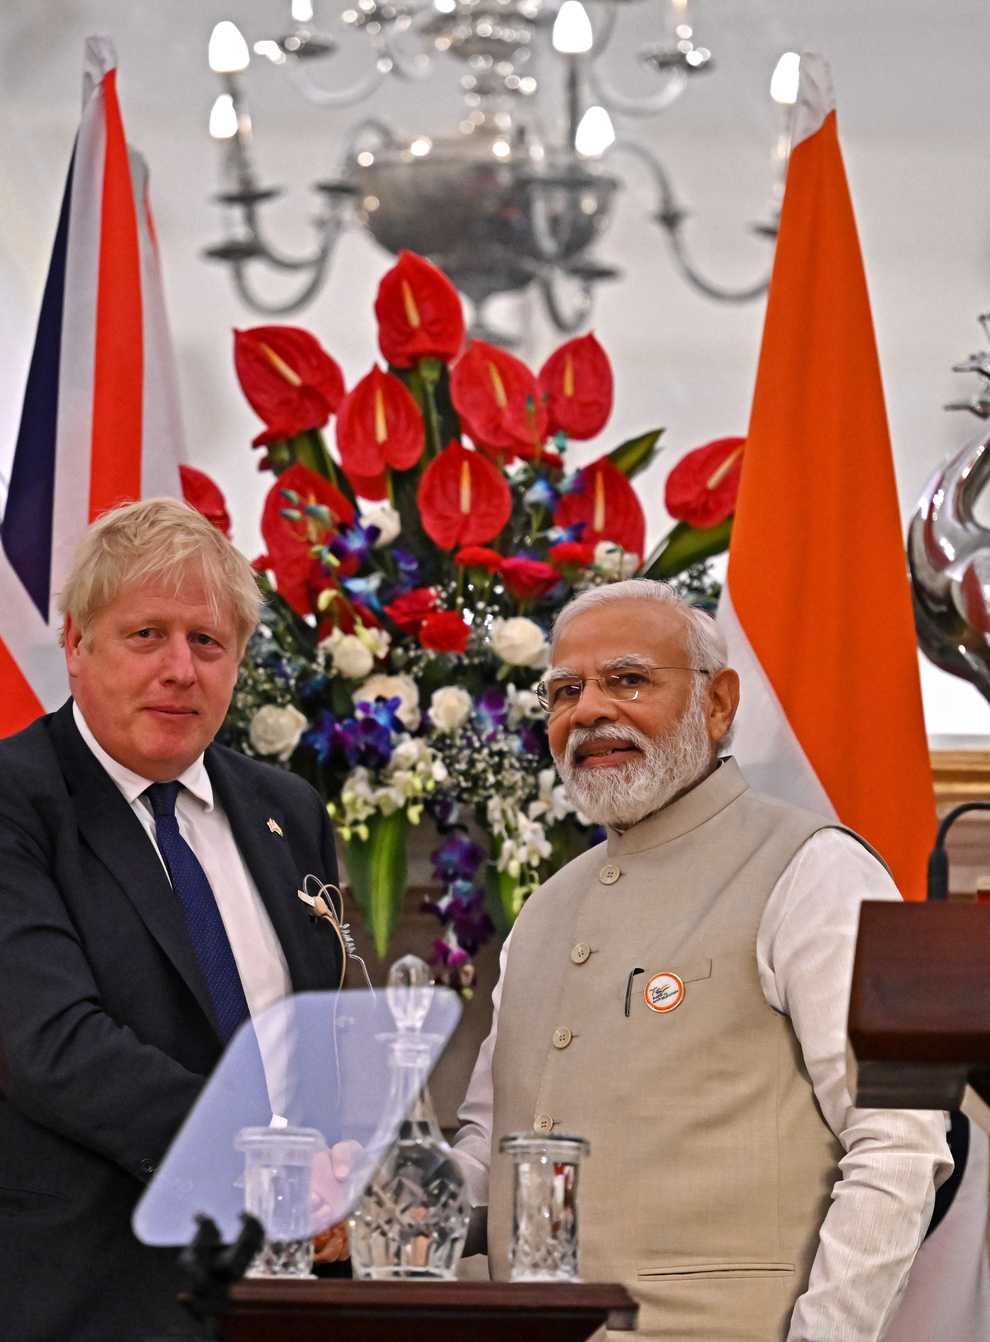 Boris Johnson with Narendra Modi at a press conference at Hyderabad House in Delhi (Ben Stansall/PA)